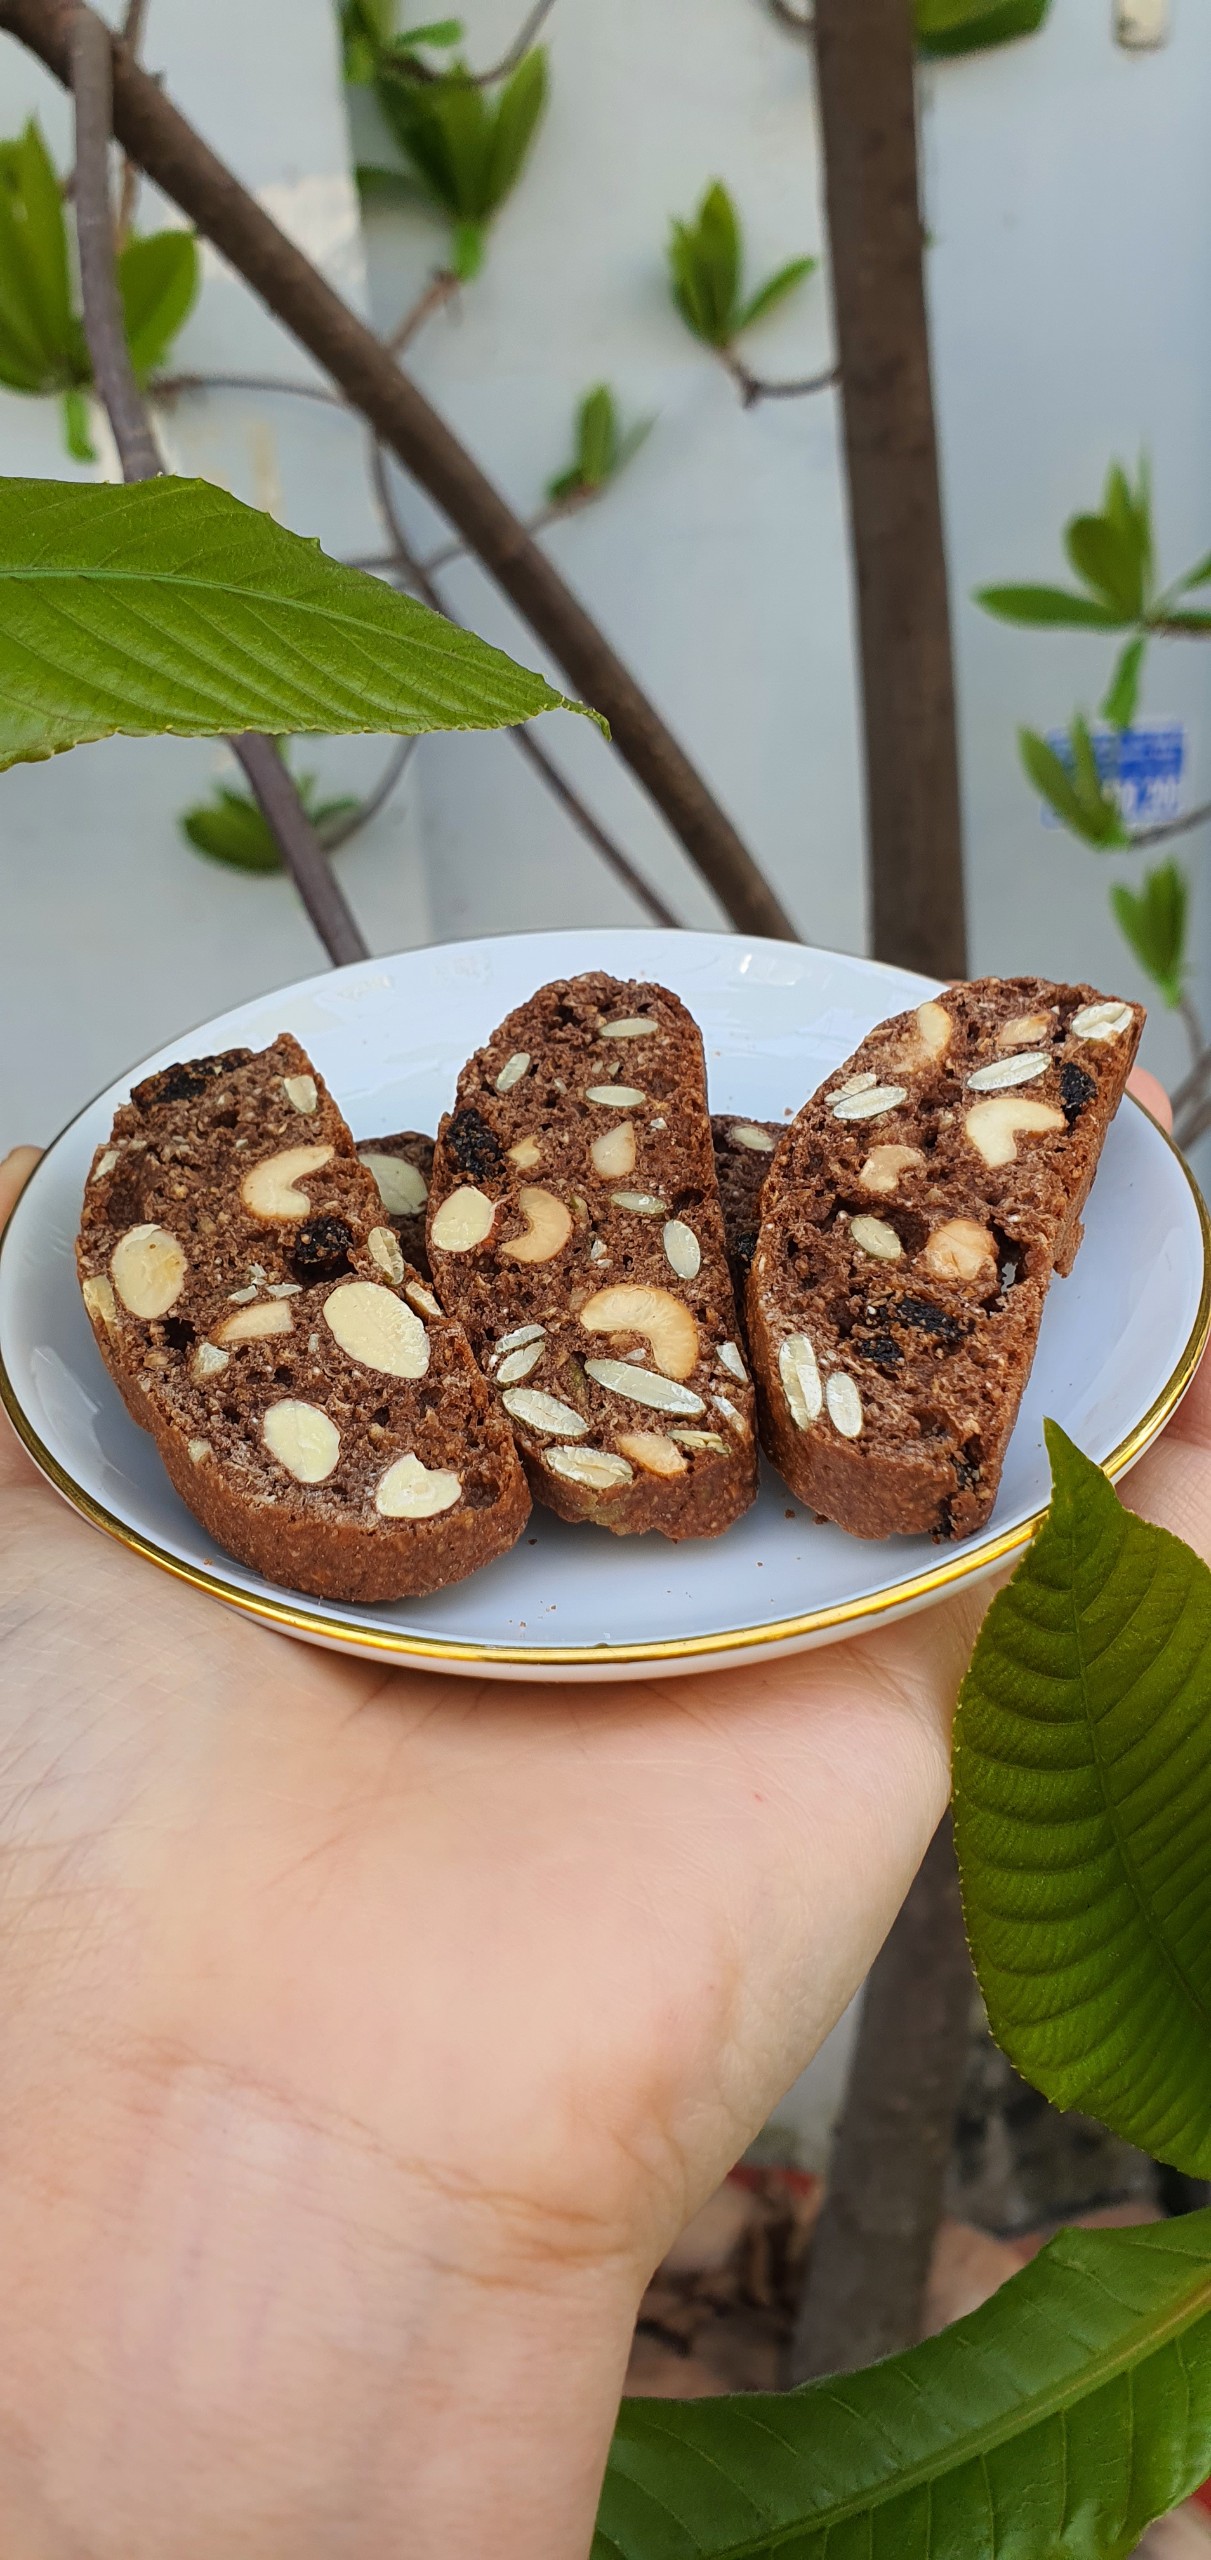 Biscotti chocolate nguyên cám siêu hạt, bánh mì nướng ăn kiêng